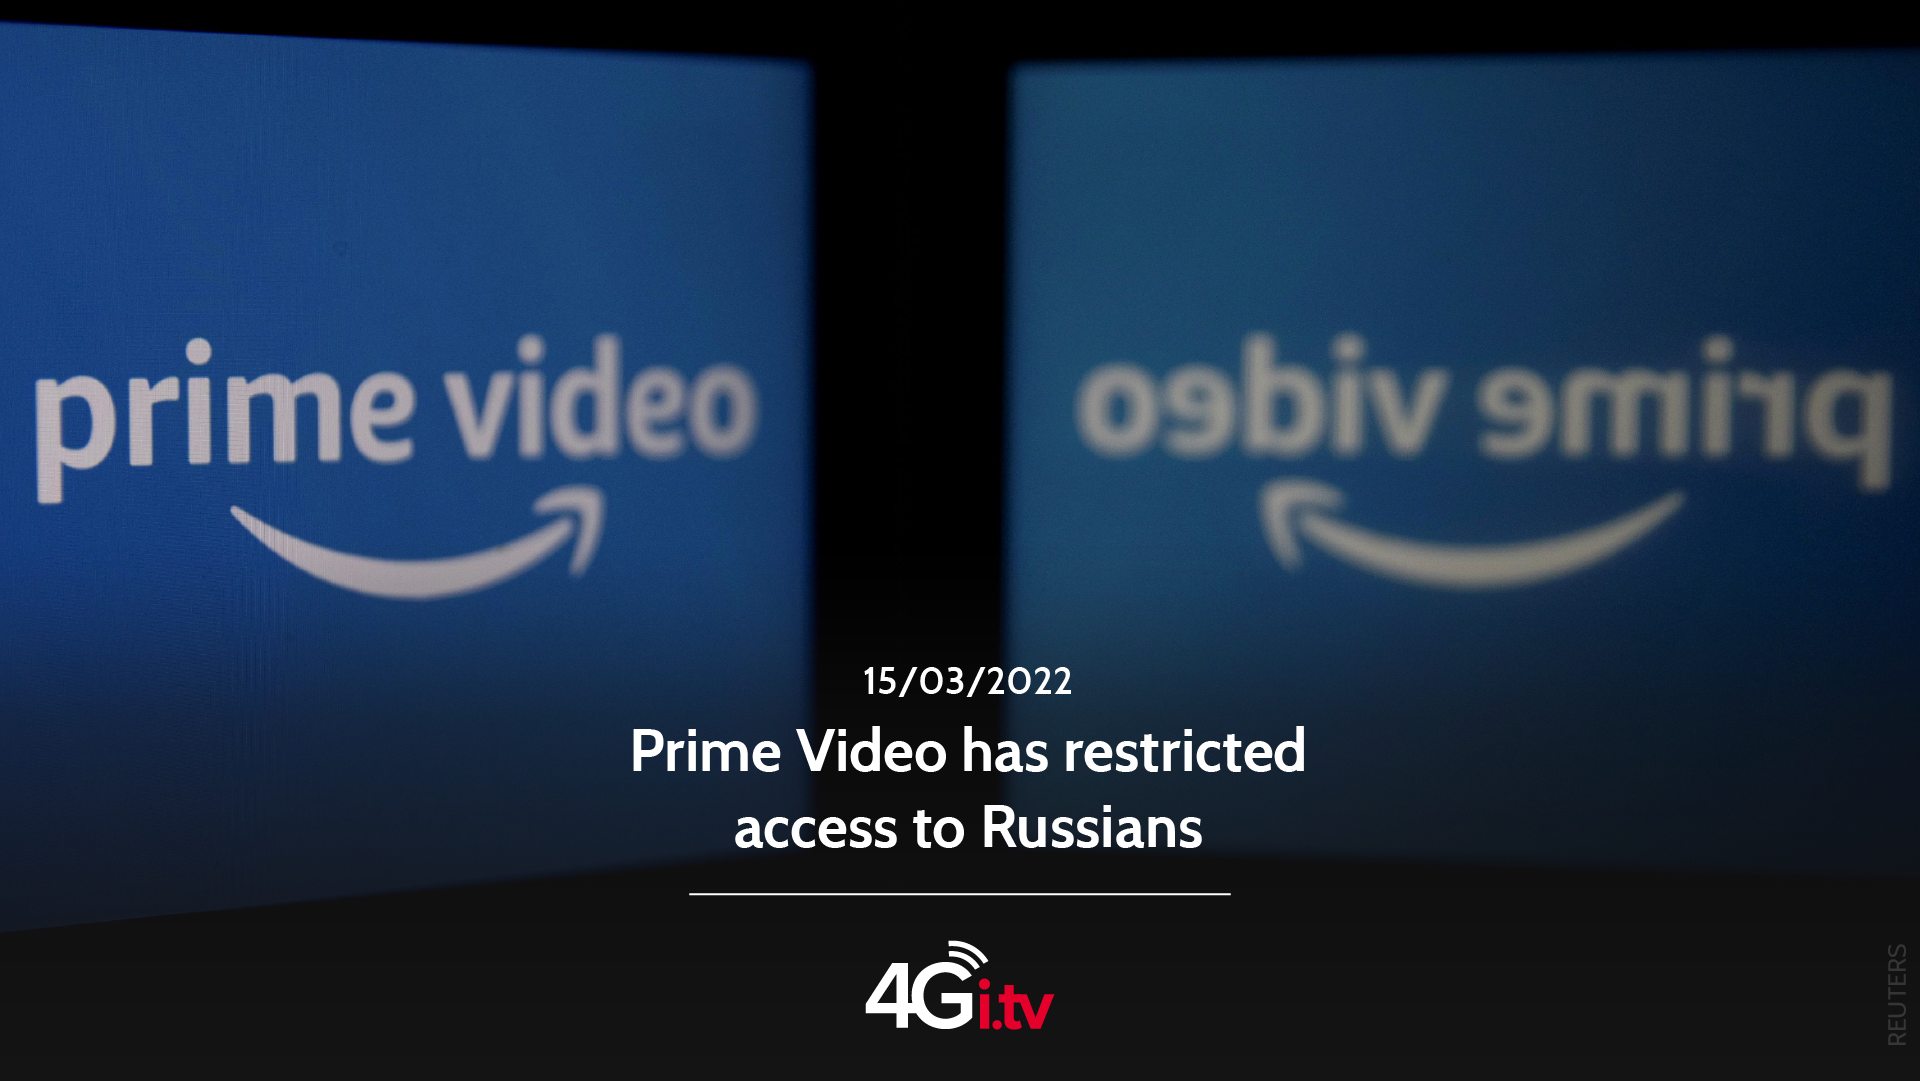 Lesen Sie mehr über den Artikel Prime Video has restricted access to Russians